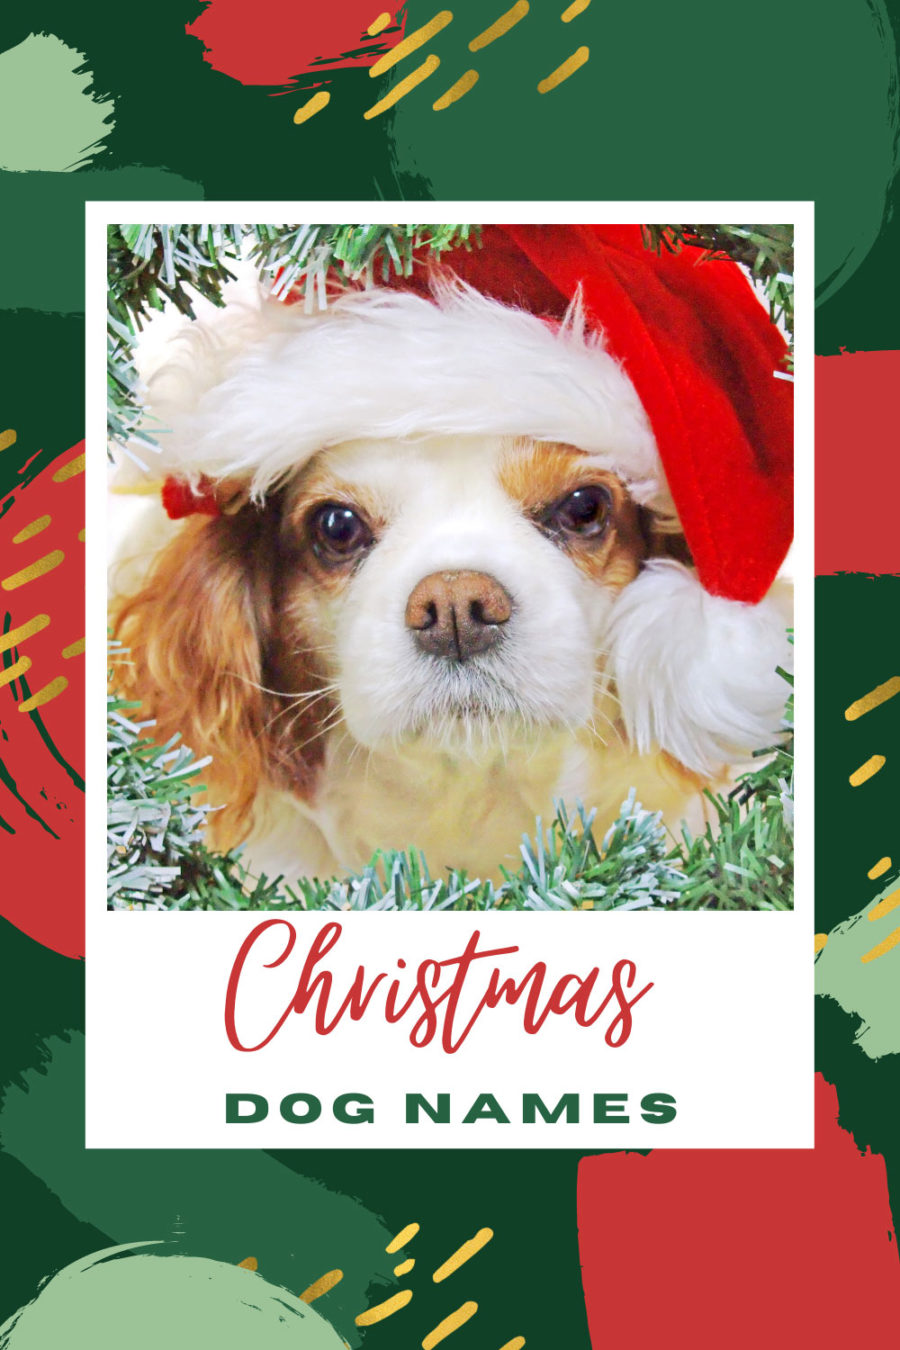 Christmas dog names